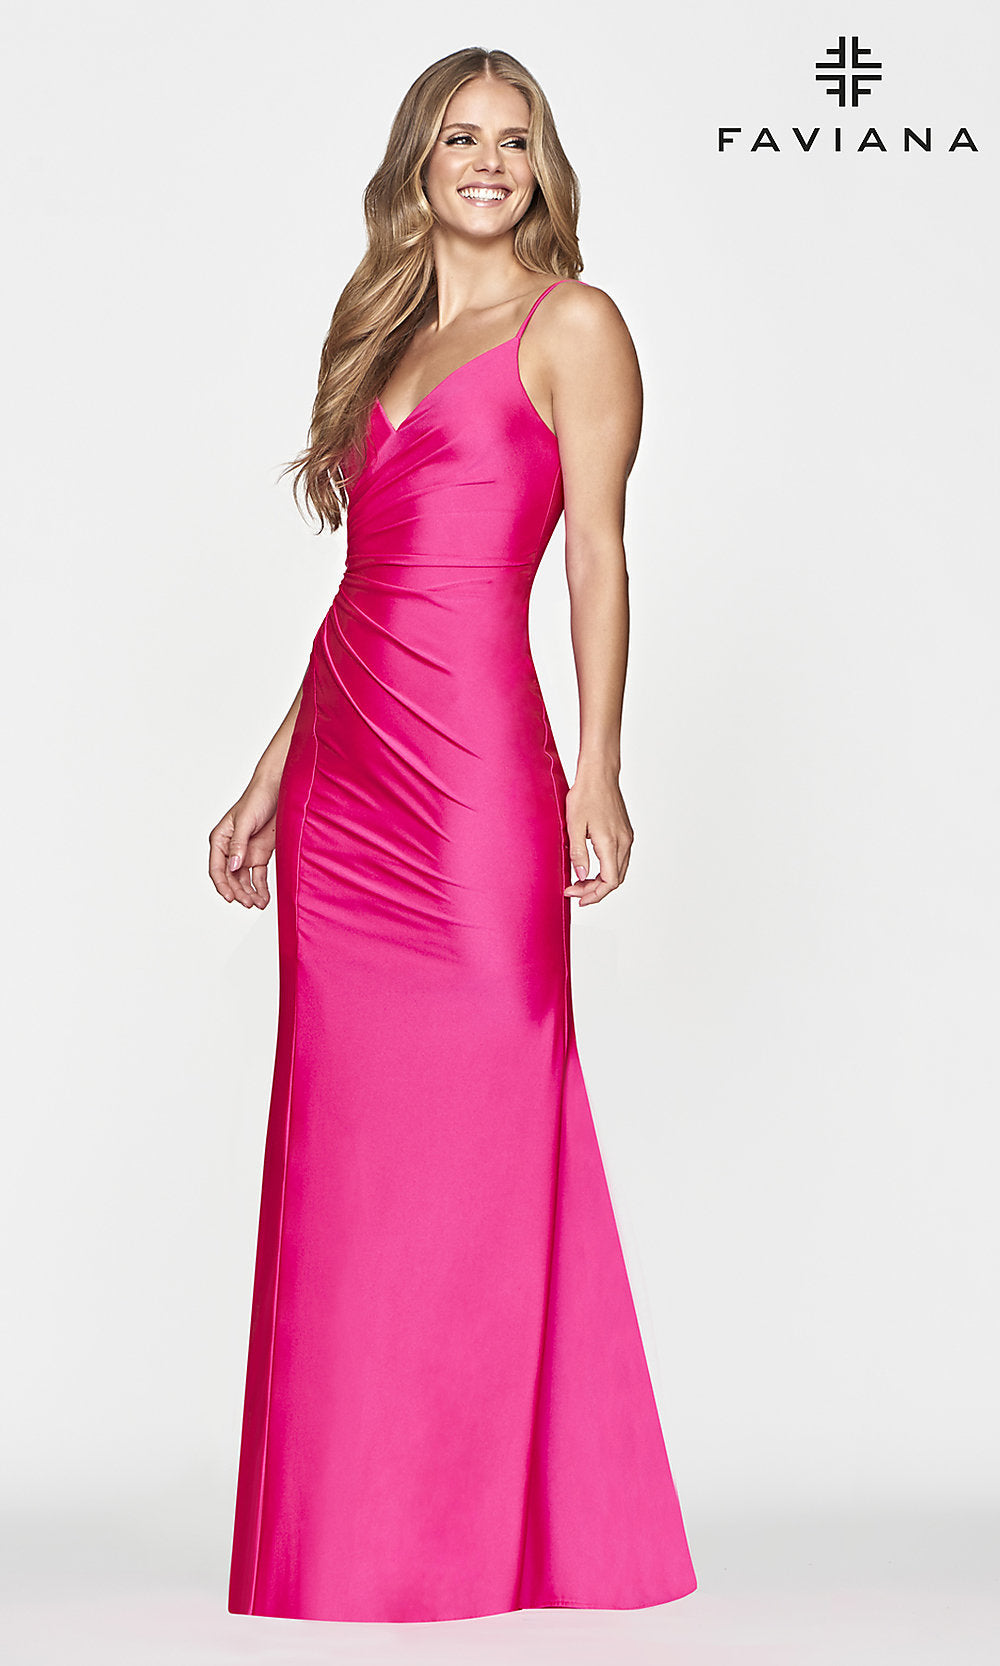  Lace-Up-Back Faviana Hot Pink Long Prom Dress